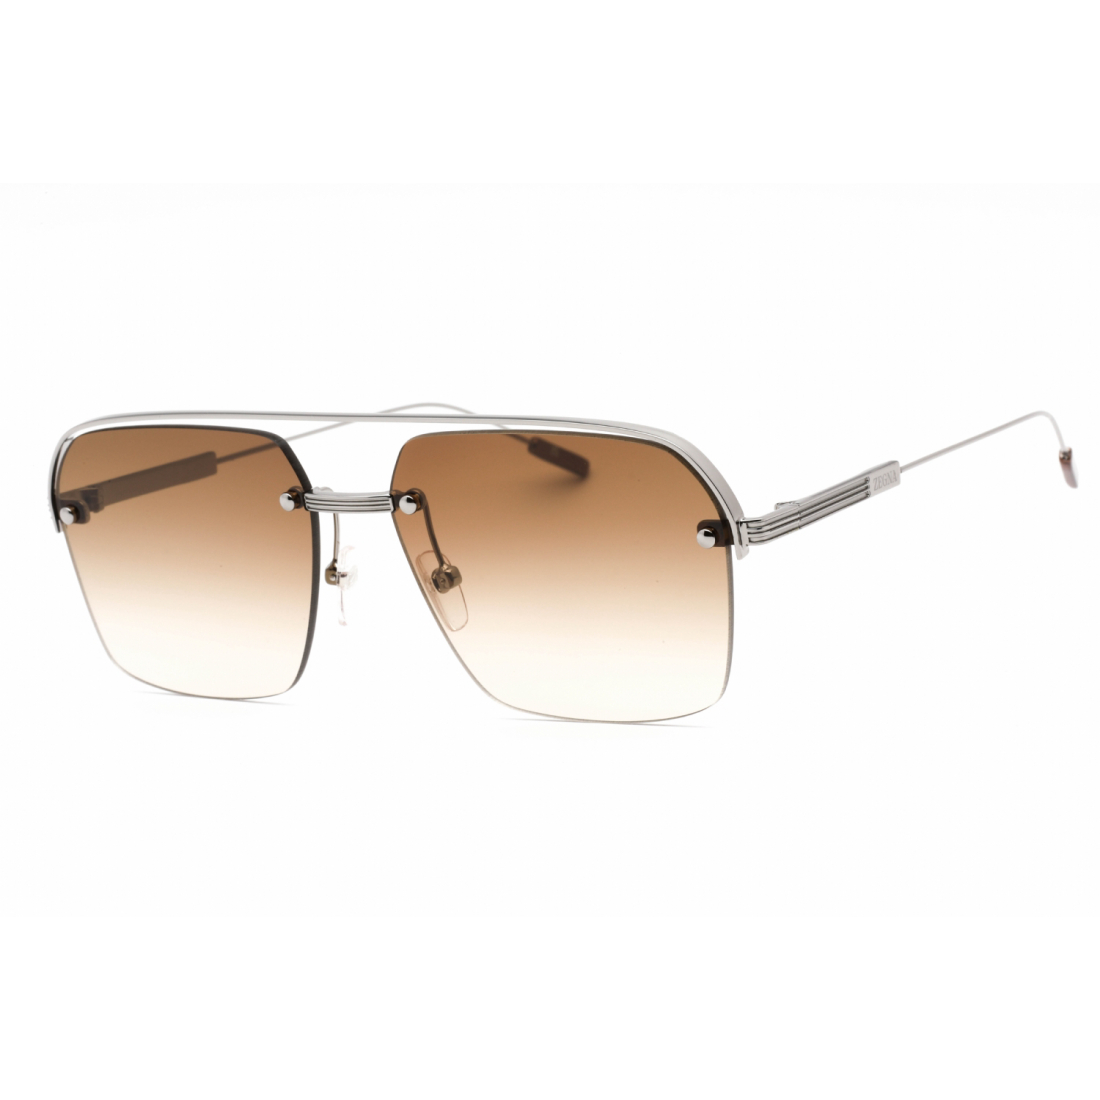 Men's 'EZ0213' Sunglasses